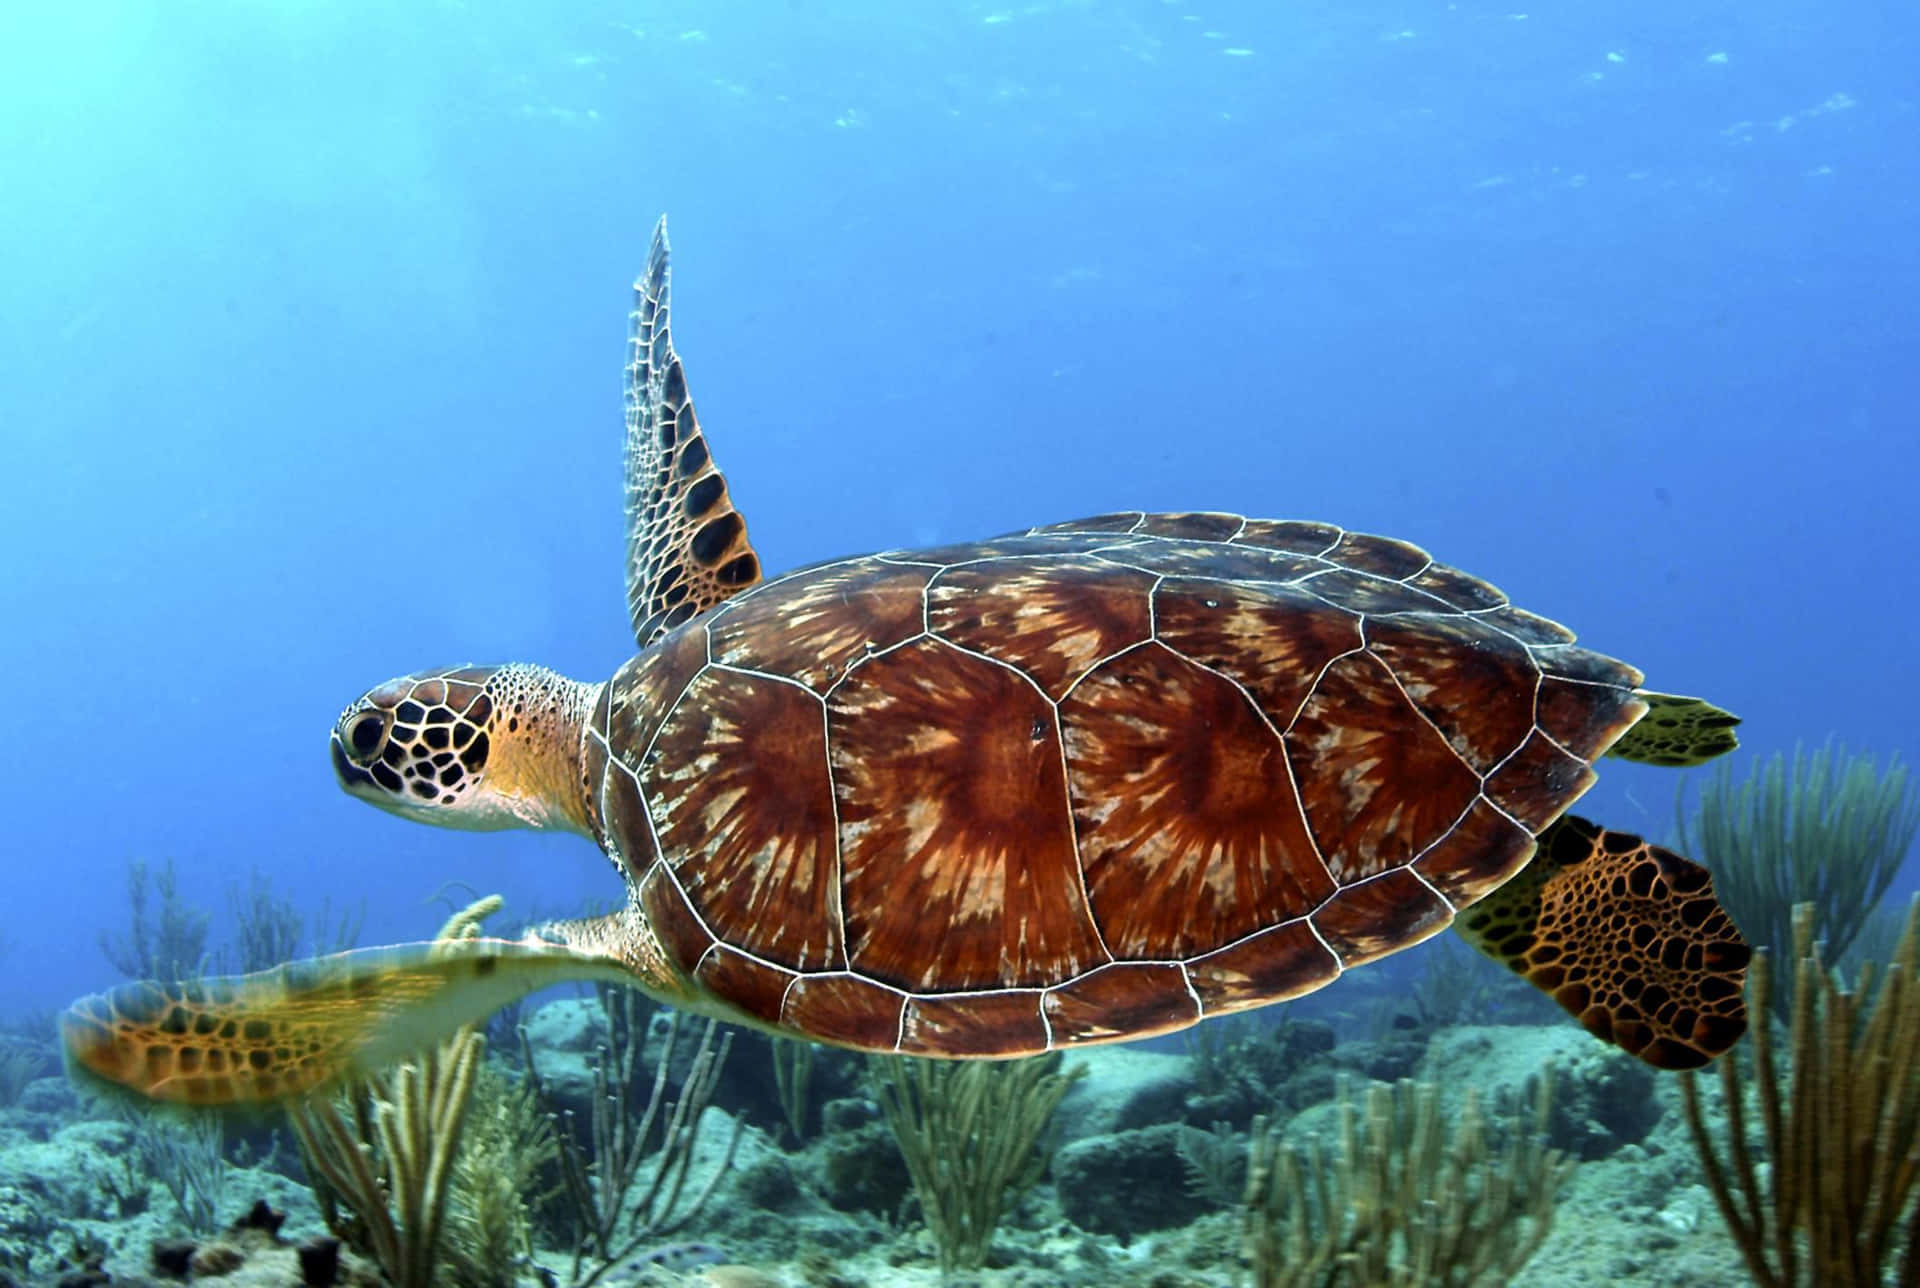 A beautiful sea turtle gliding through a calm ocean